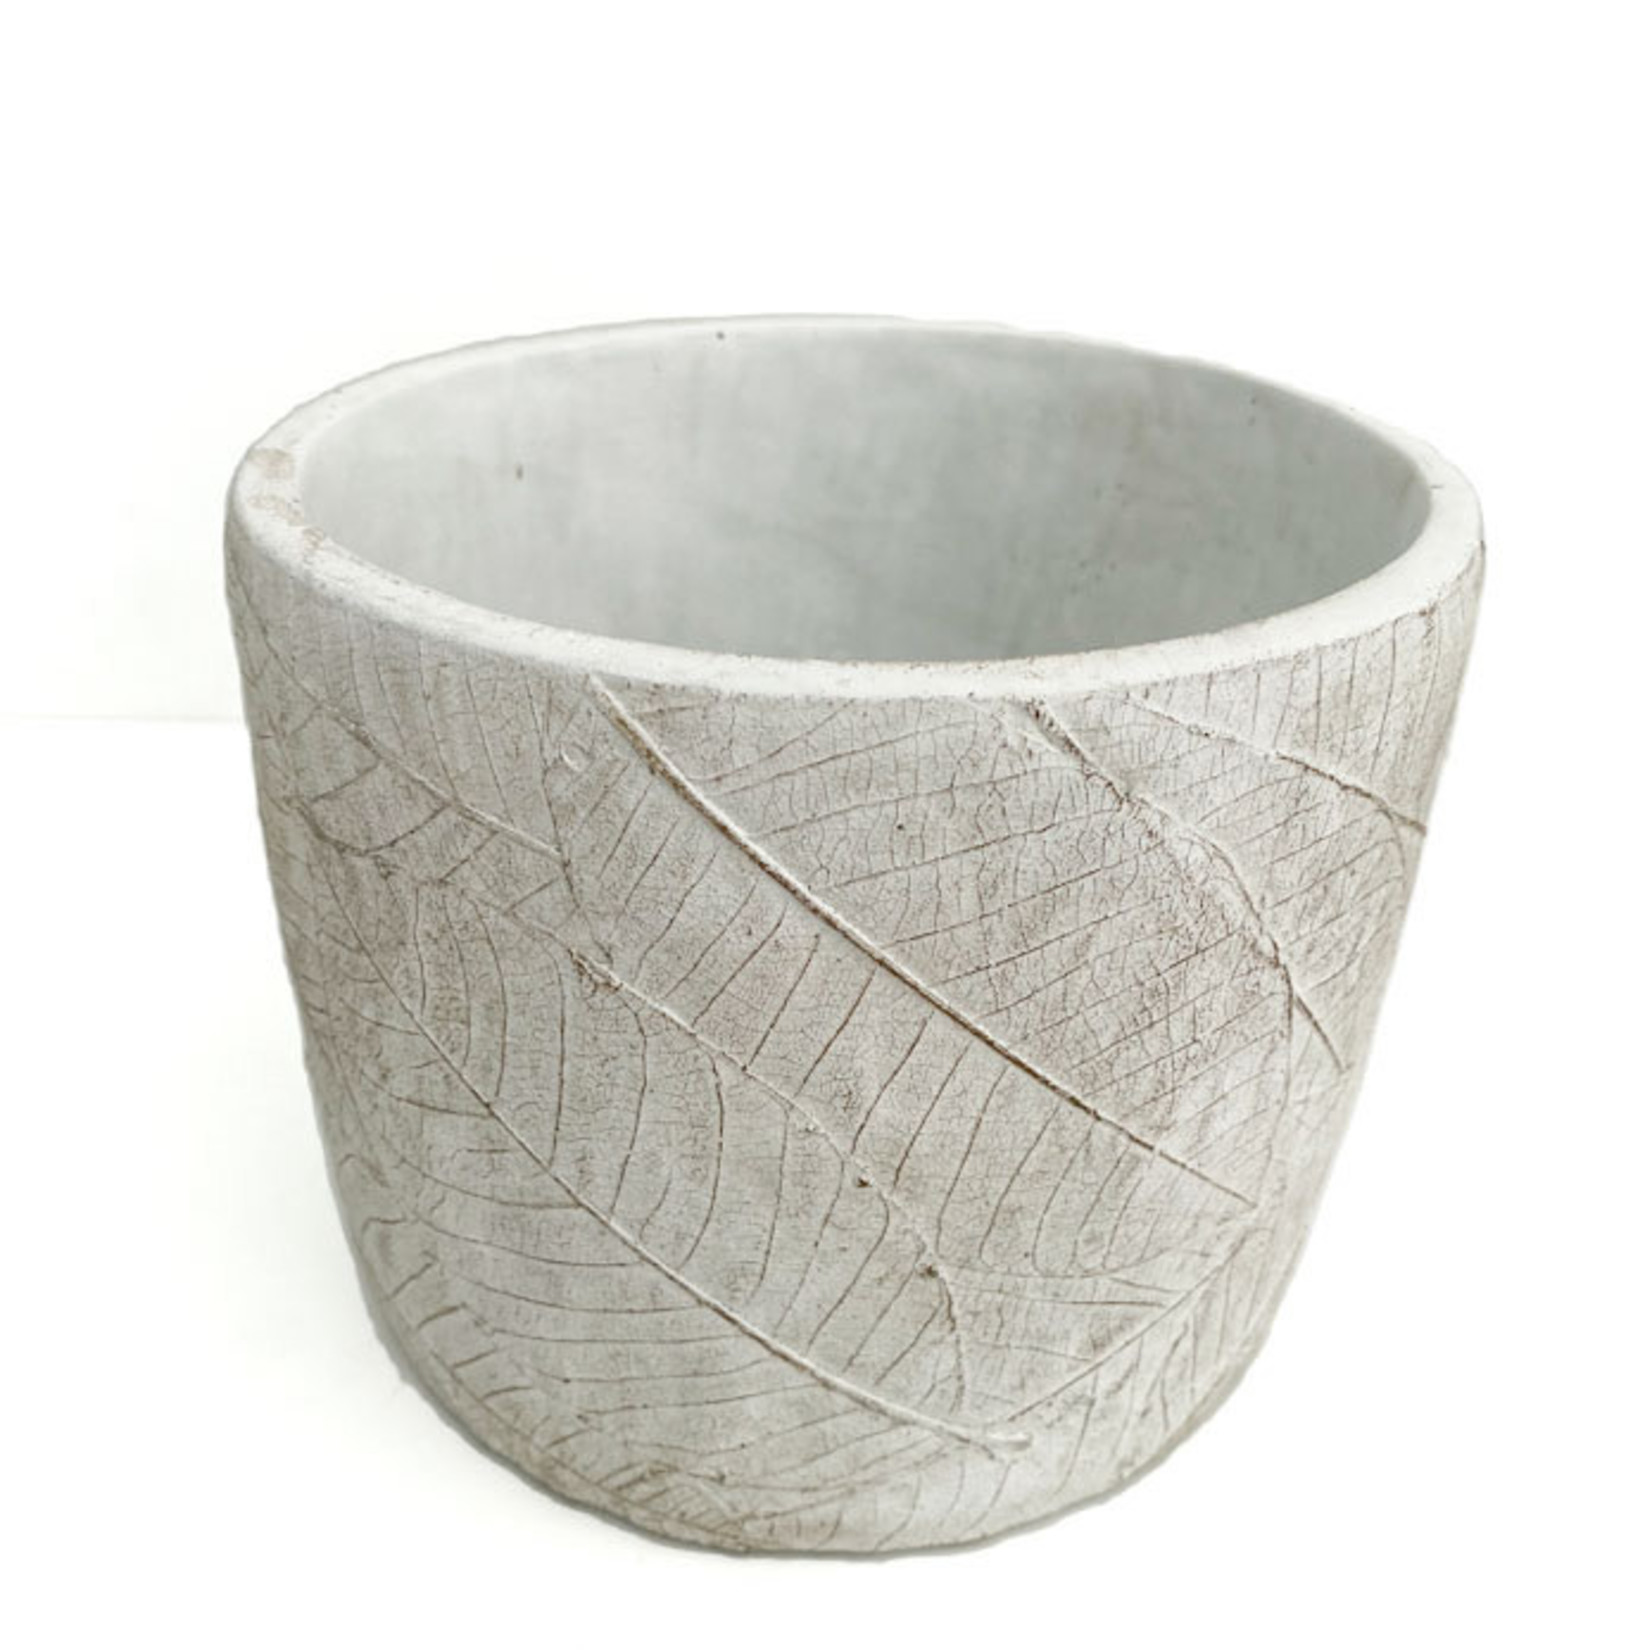 Ceramic Pot - White+Grey 11x9.5cm